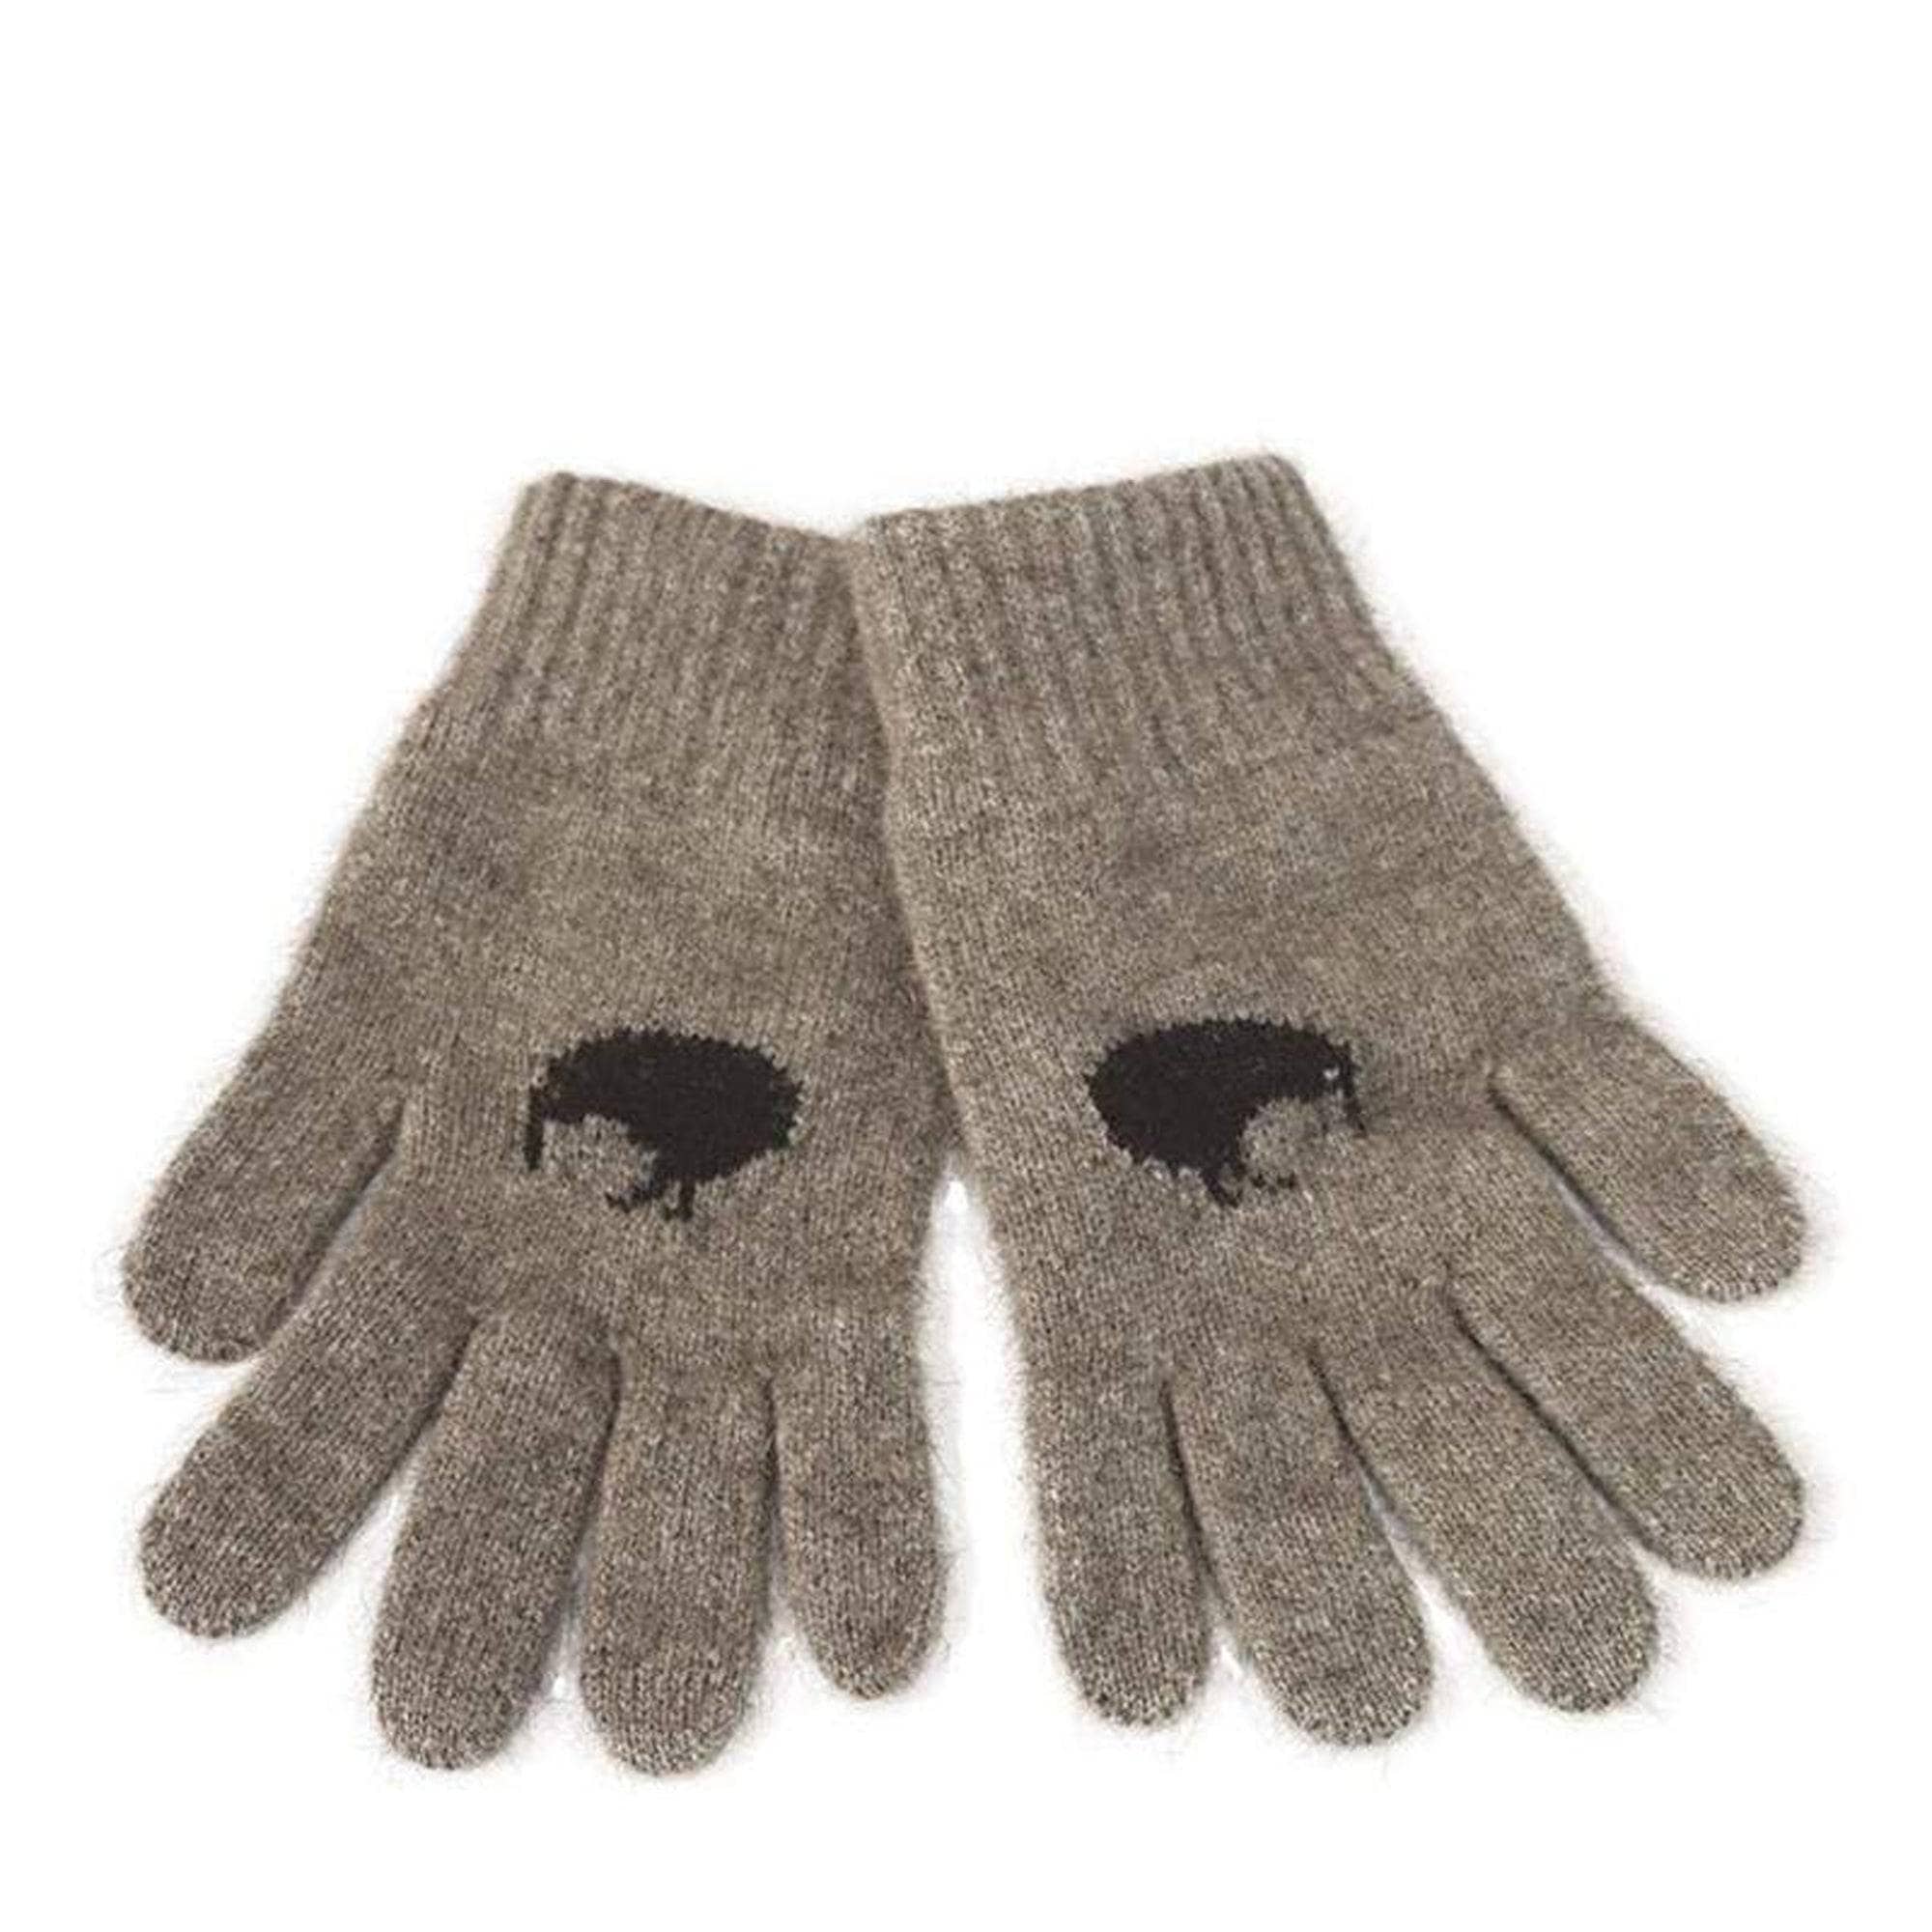 Premium Possum and Merino Wool Gloves